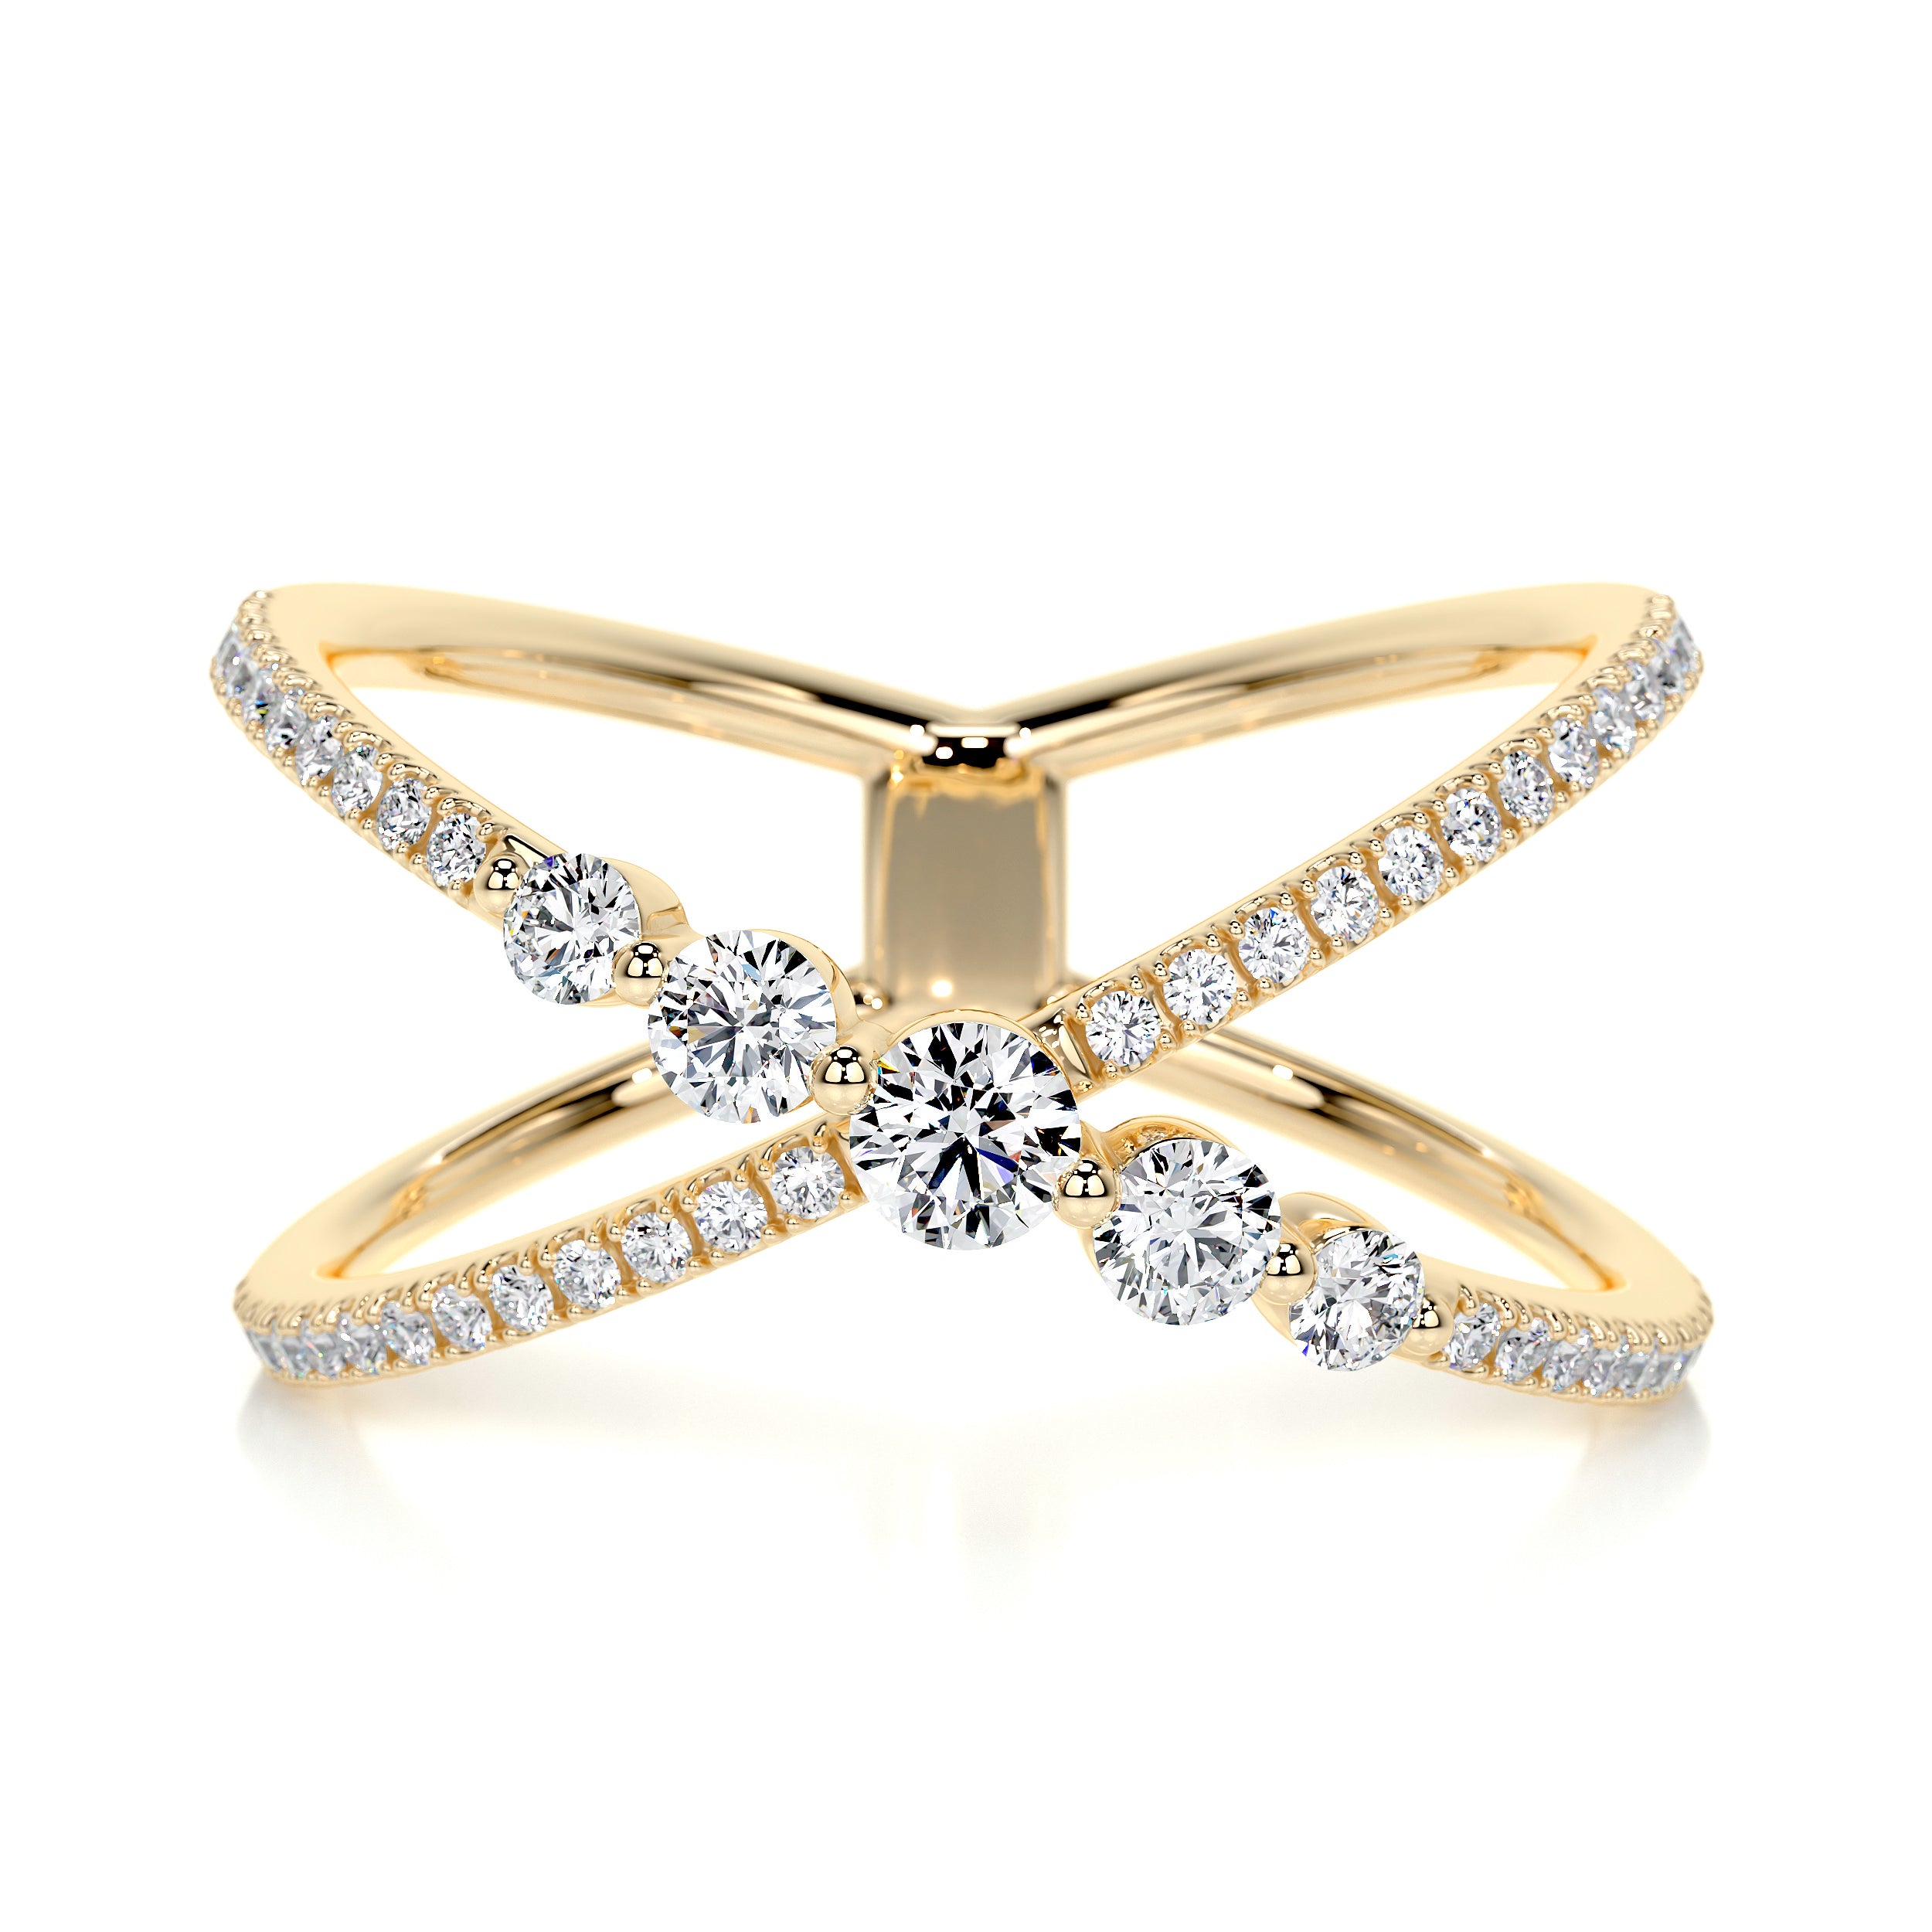 Iris Fashion Diamond Ring   (0.42 Carat) -18K Yellow Gold